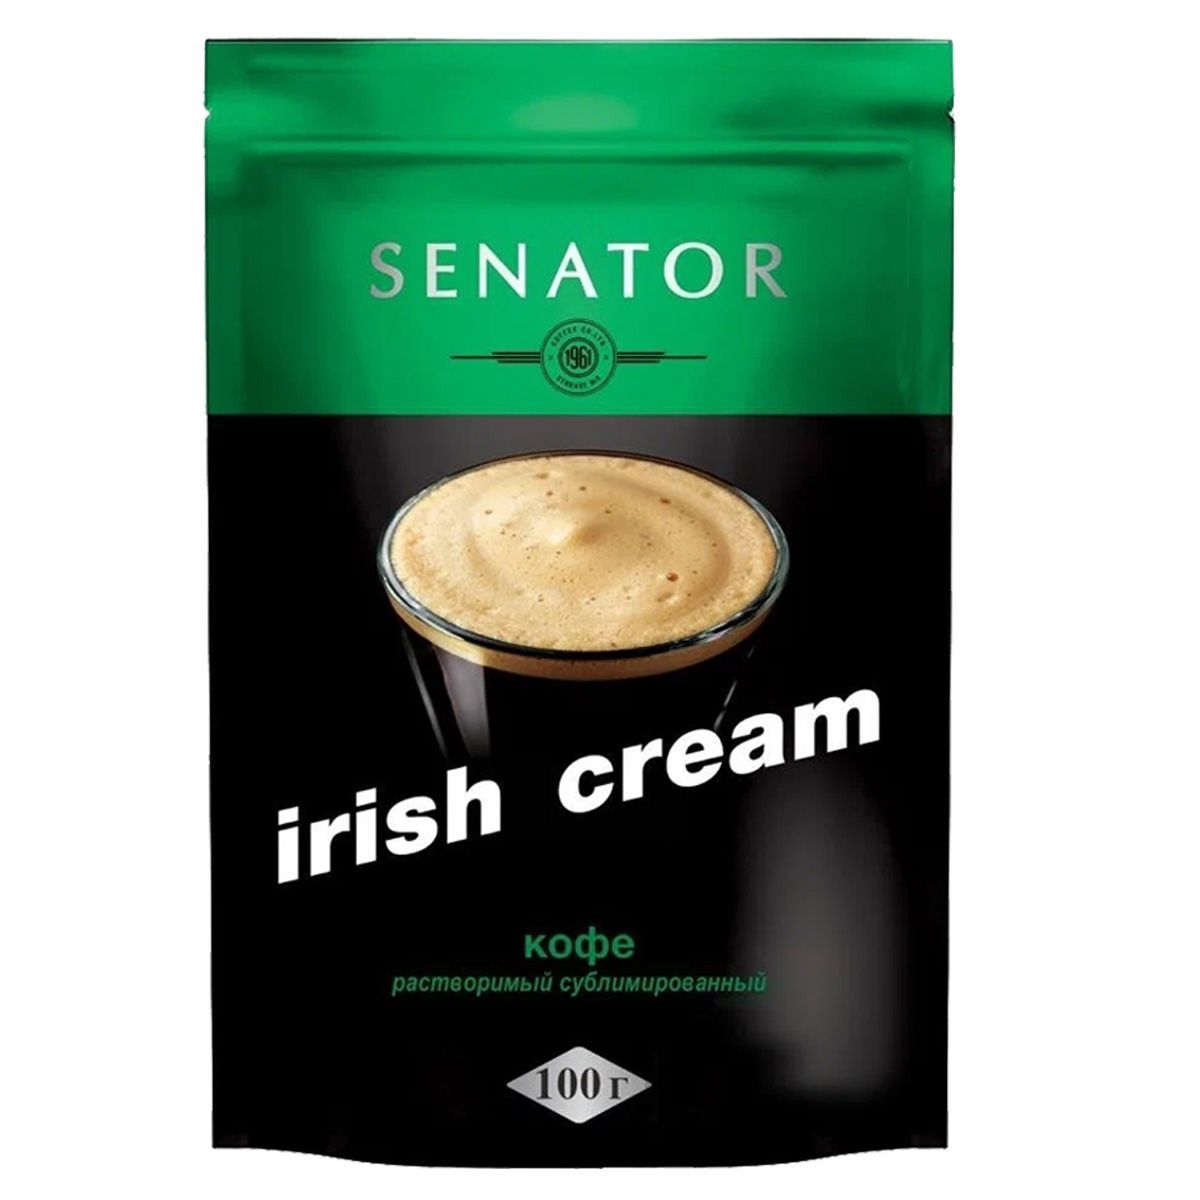 Kофе Senator Cappuccino 100г. Айриш Крим кофе. Кофе ирландский крем. Кофе растворимый сублимированный. Сливки растворимым кофе